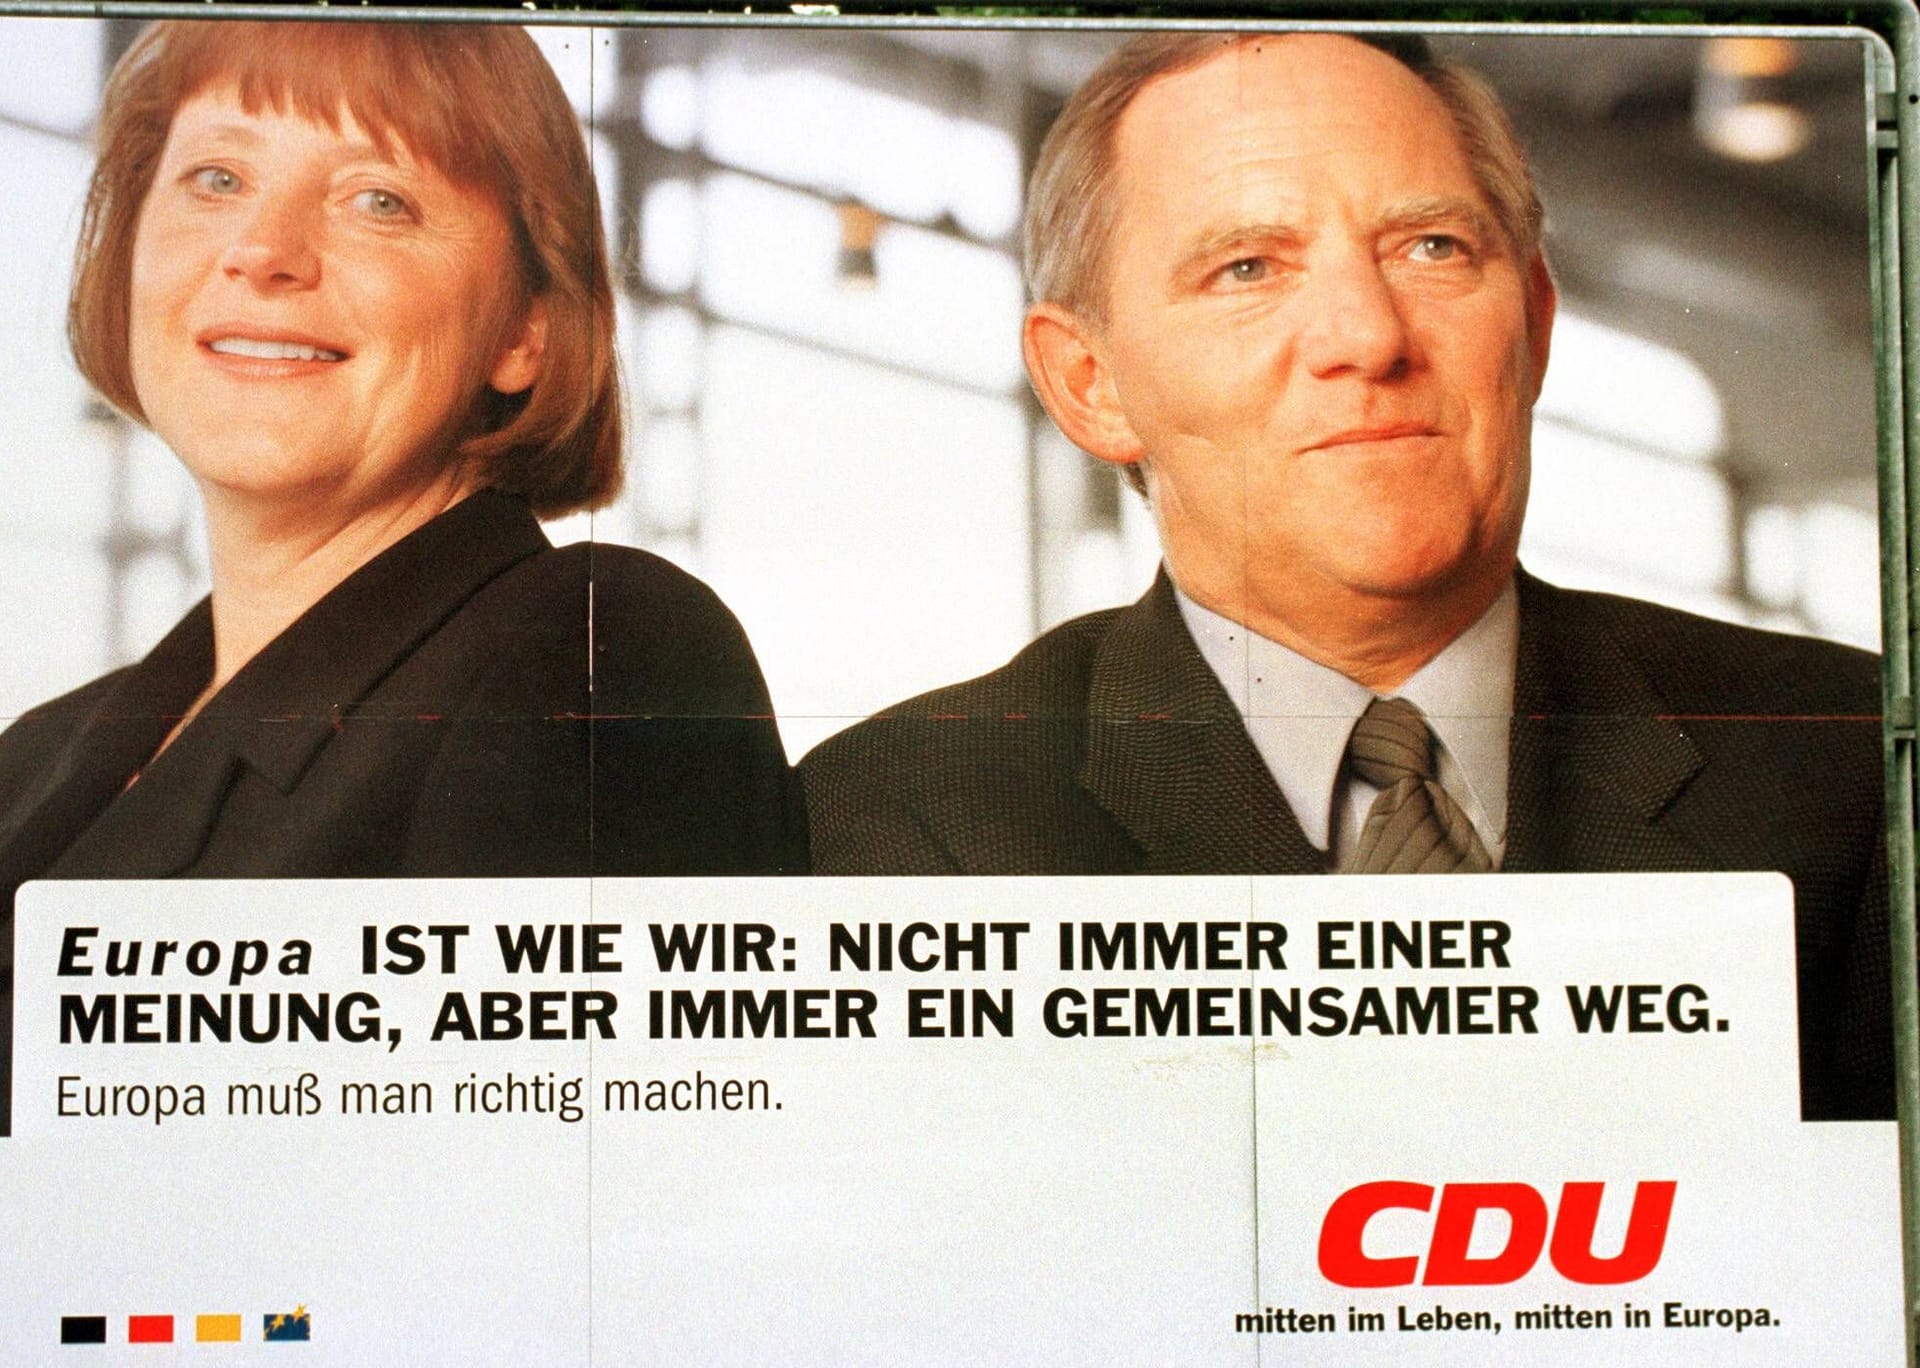 Angela Merkel und Wolfgang Schäuble auf einem Wahlplakat zur Europawahl 1999. Der ehemalige Bundeskanzler Helmut Kohl hatte Schäuble 1997 noch zu seinem Nachfolger auserkoren. Bei der Bundestagswahl 2005 wurde aber Merkel Kanzlerin.